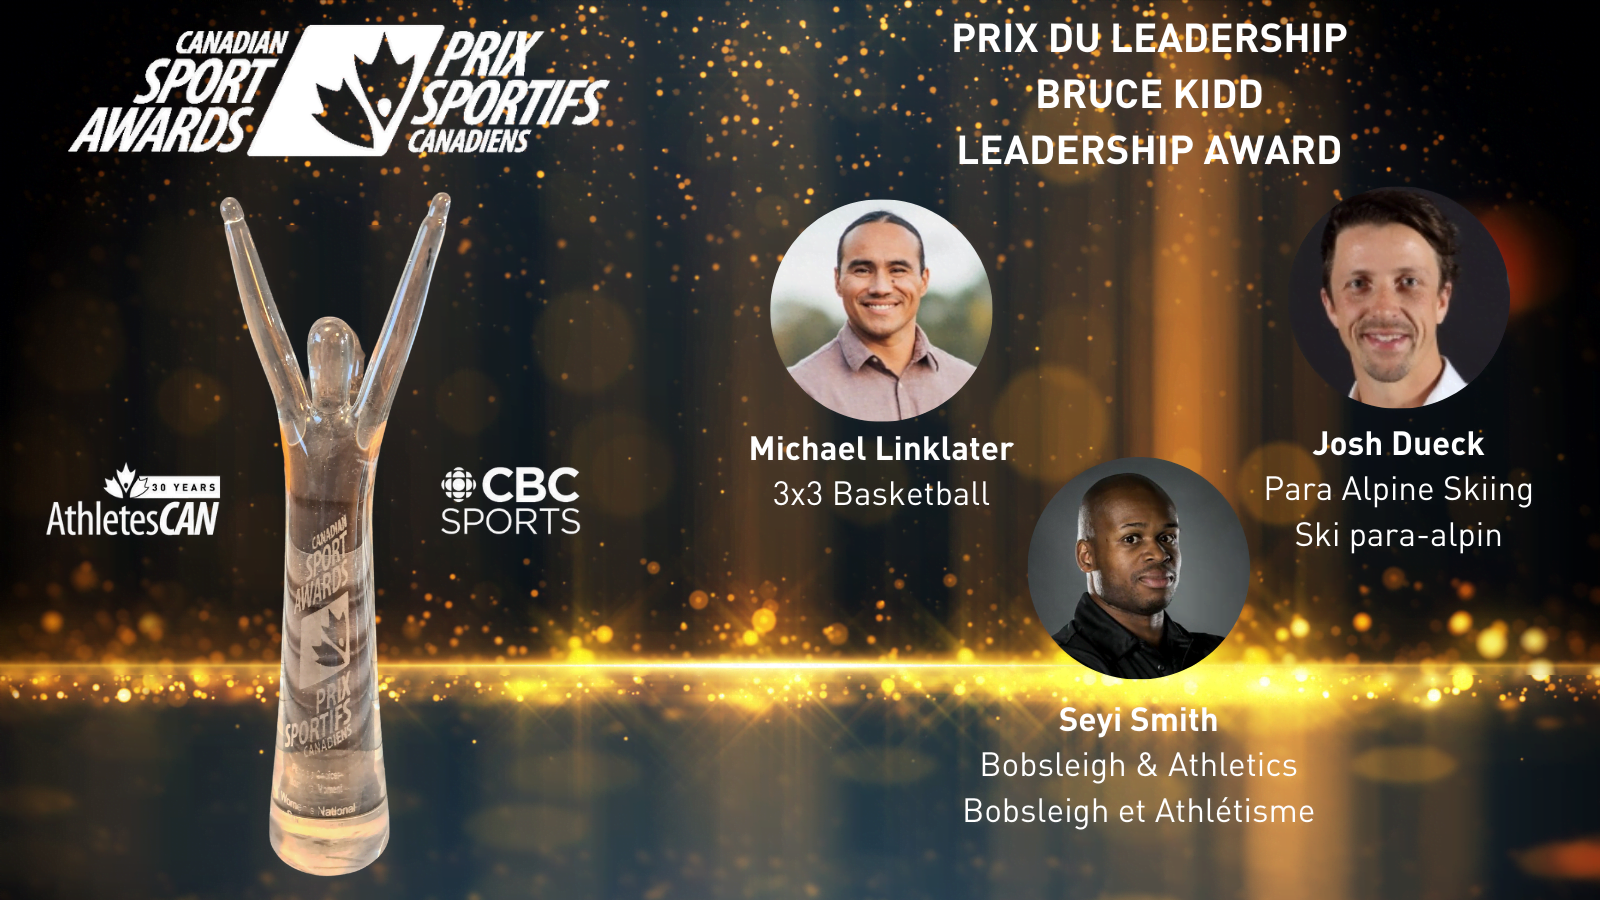 45th Canadian Sport Awards: Bruce Kidd Leadership Award Nominees